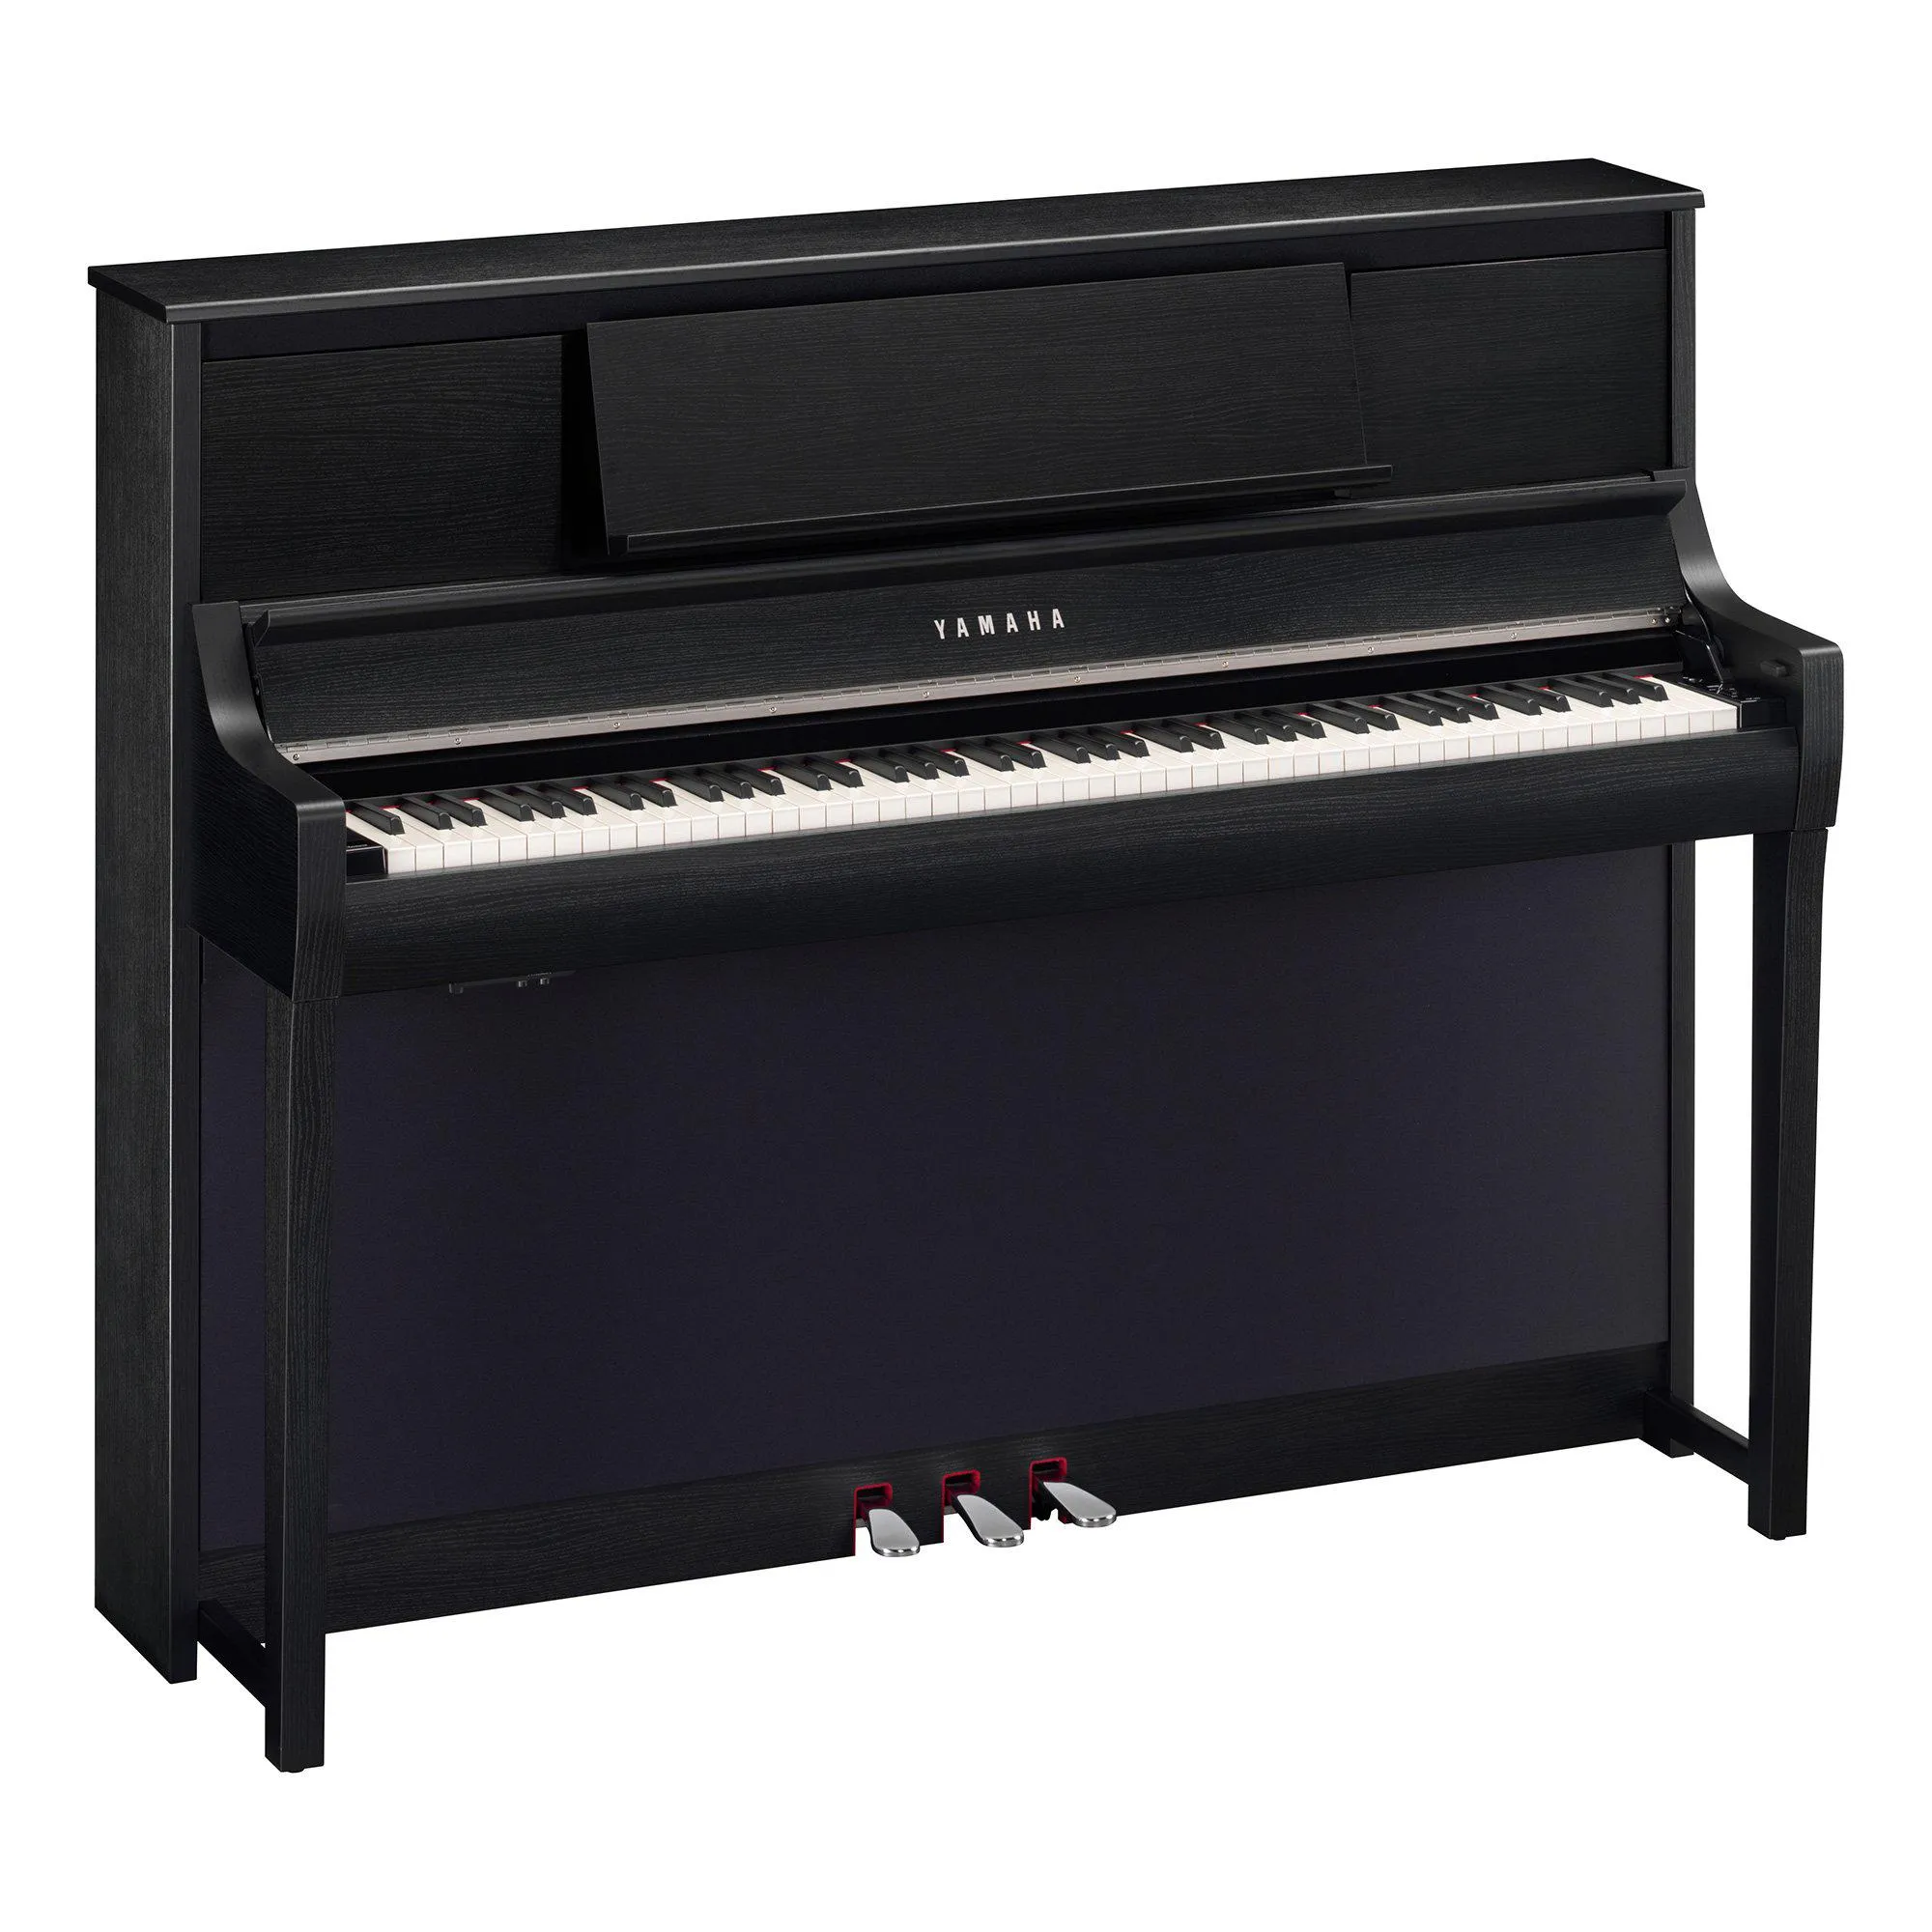 Piano Yamaha CSP-295GP Digital Preto por 0,00 à vista no boleto/pix ou parcele em até 1x sem juros. Compre na loja Mundomax!